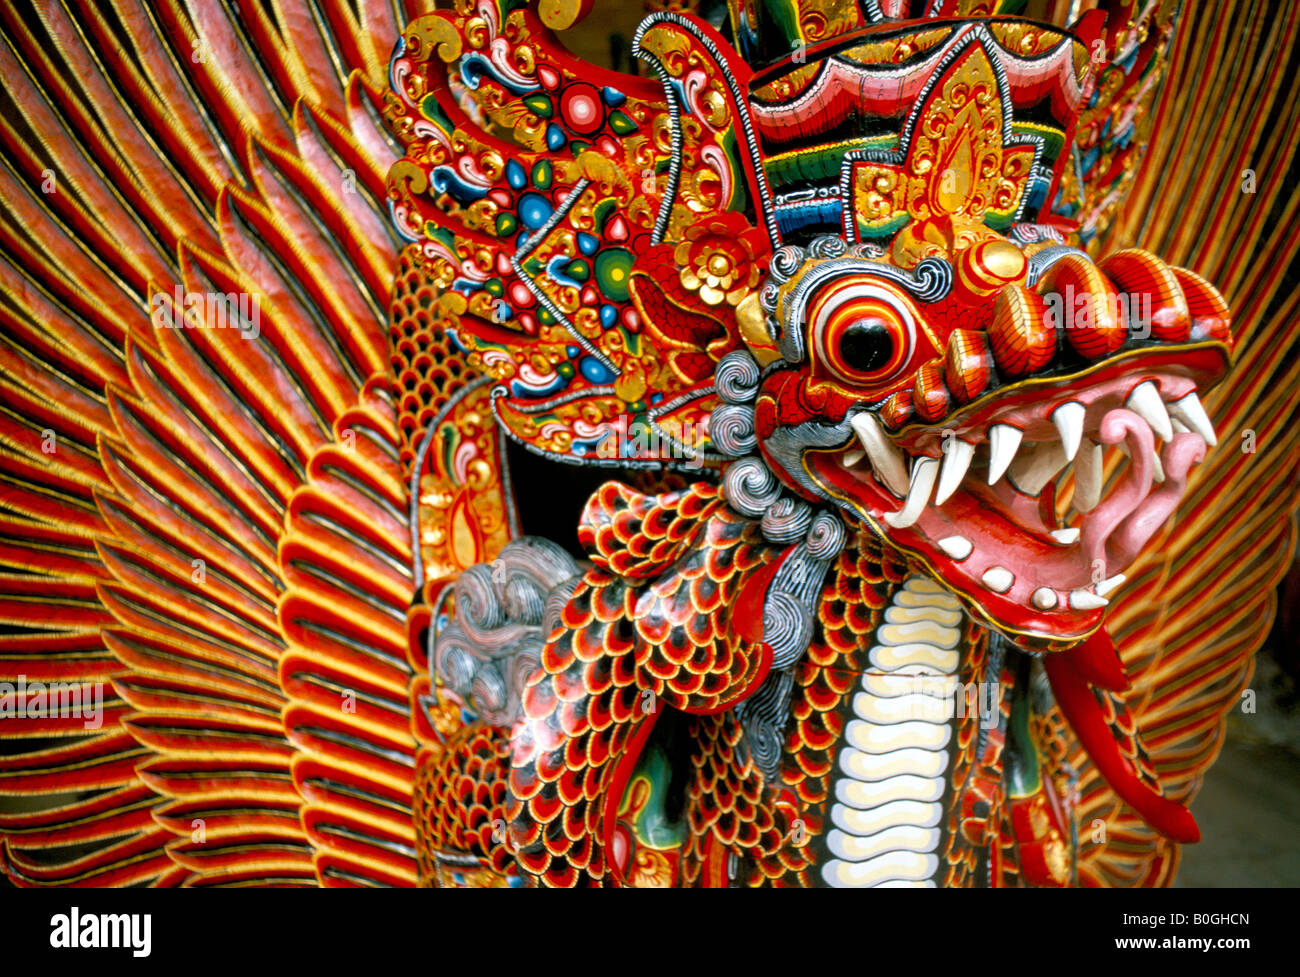 Un dragon en bois peintes de couleurs vives, Bali, Indonésie. Banque D'Images